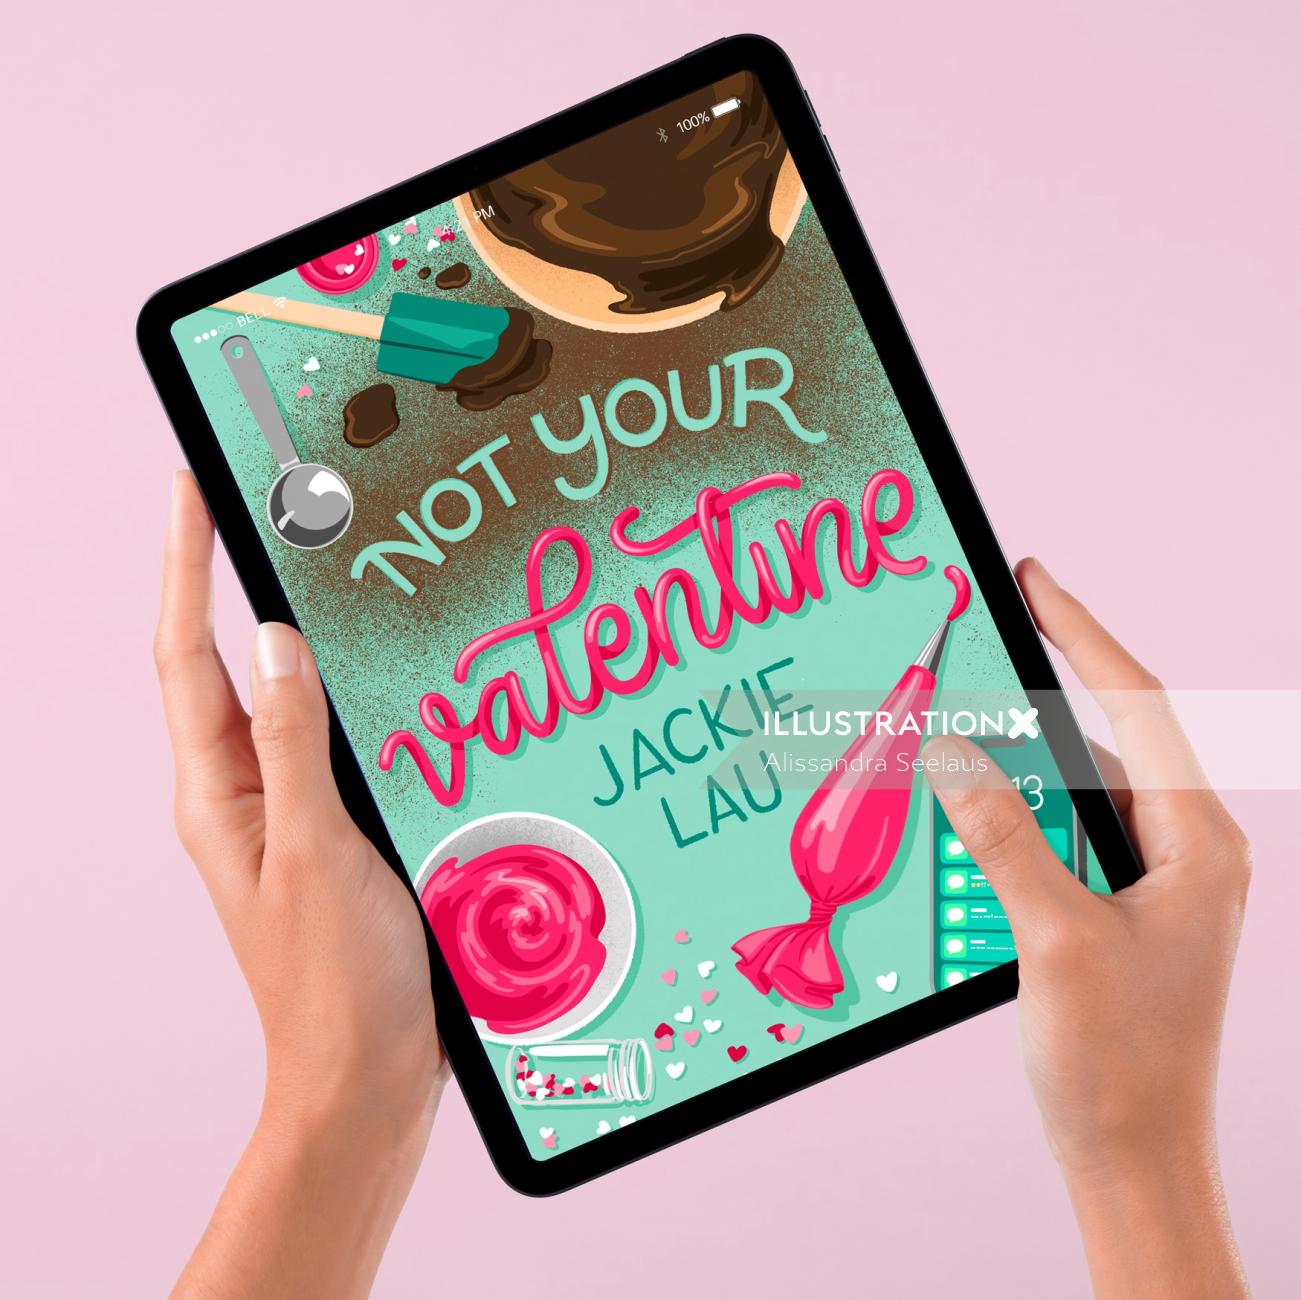 《不是你的情人》一书的插图封面设计